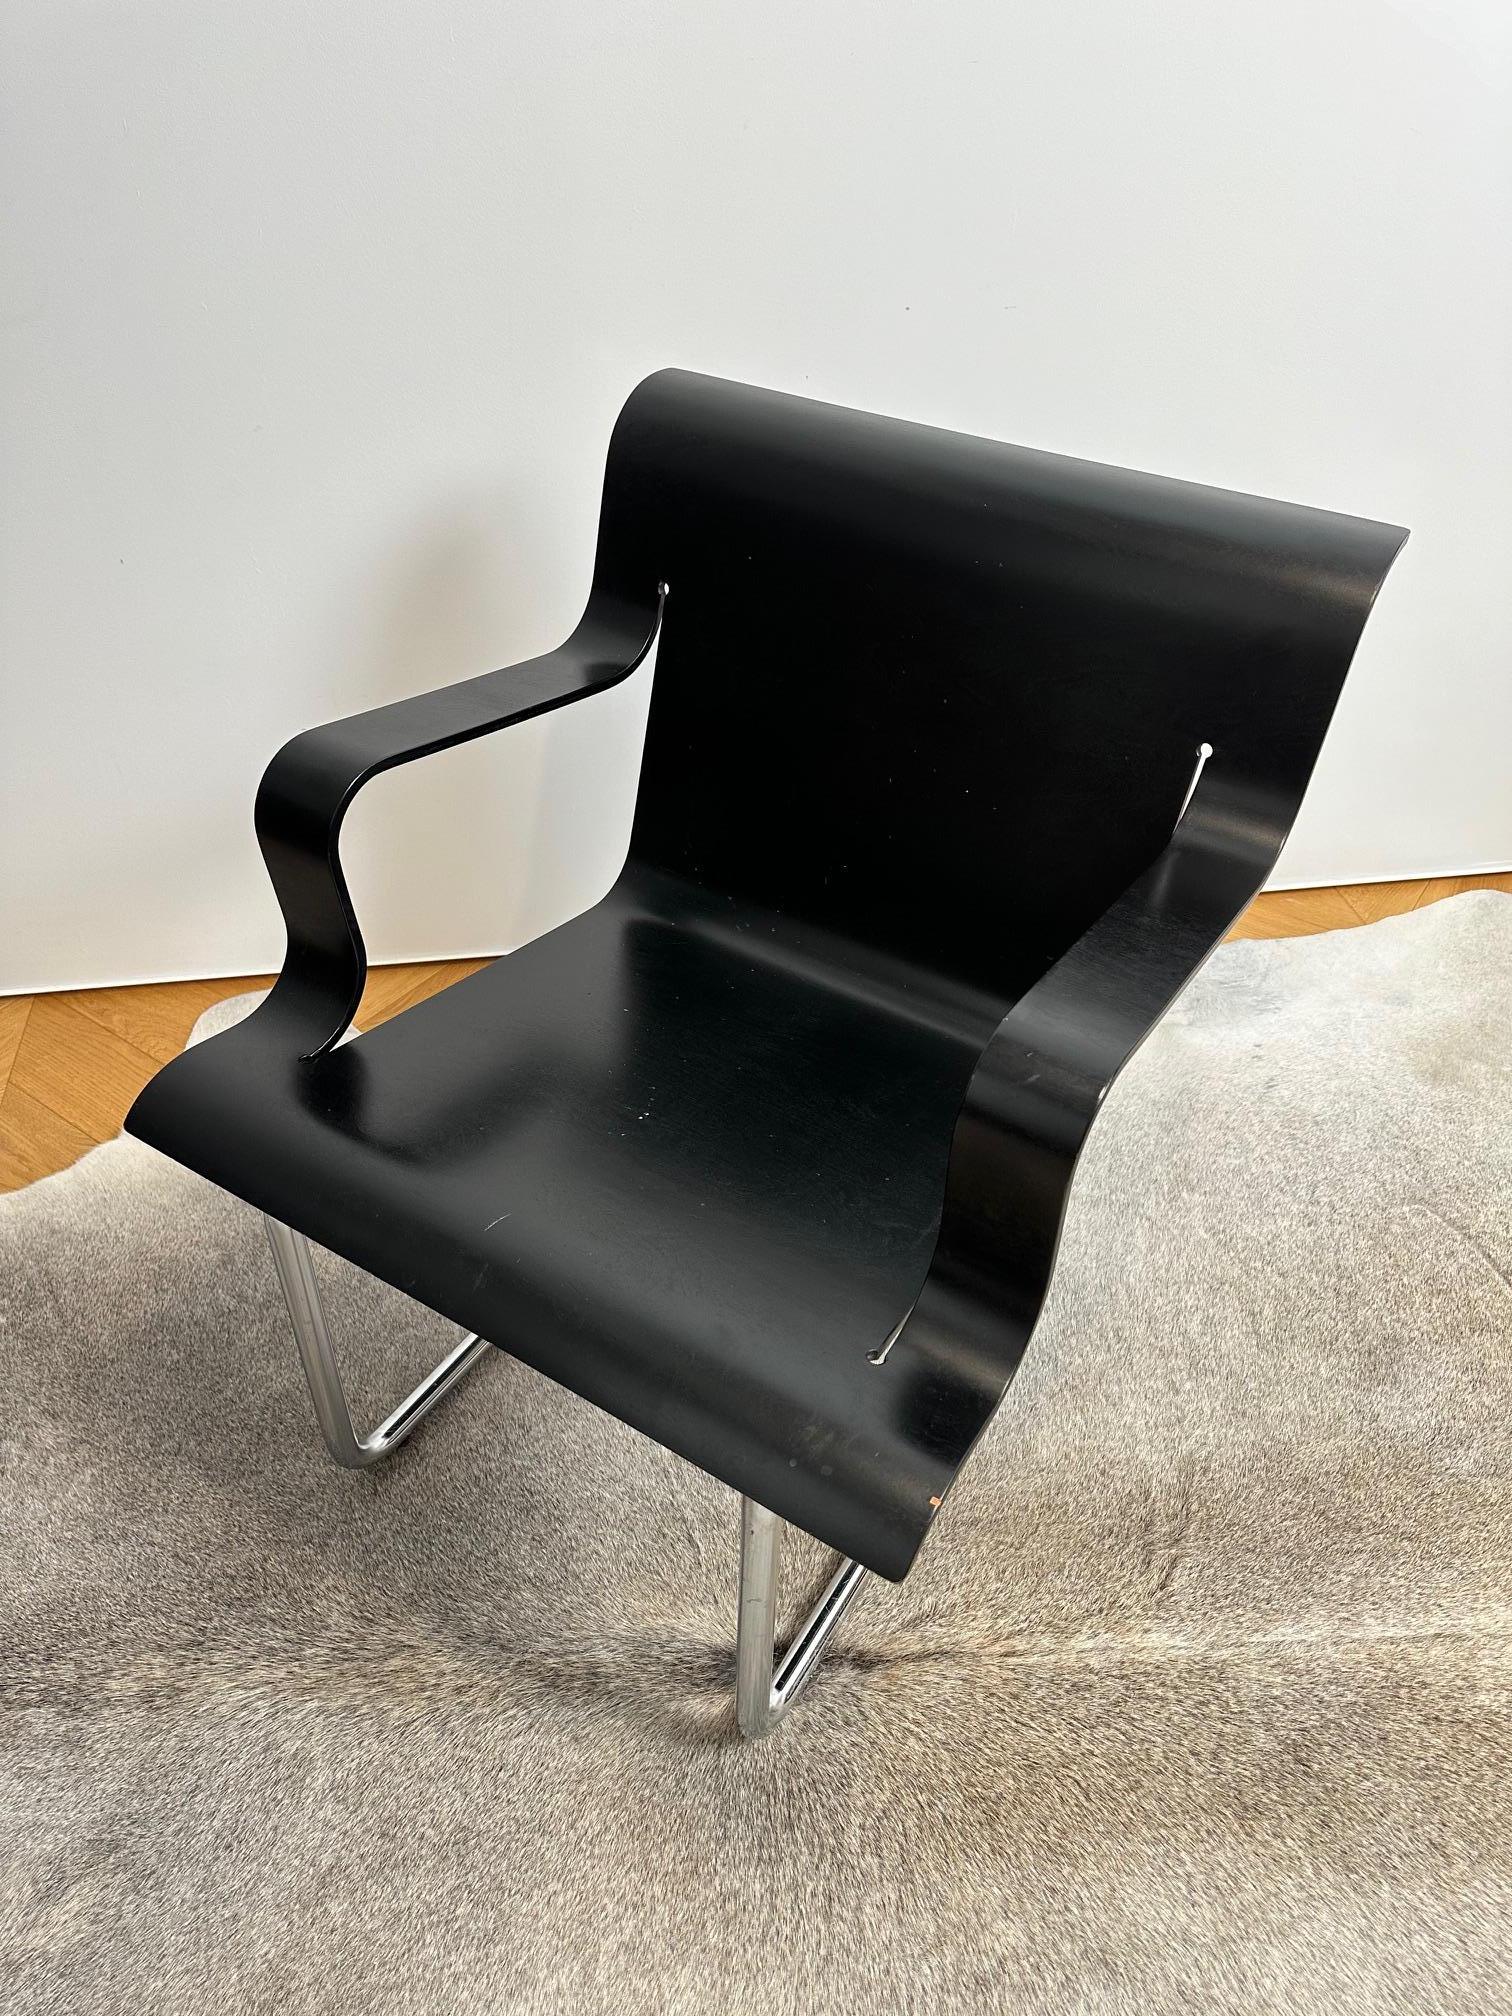 Der sehr schwer zu findende Sessel Modell 26 wurde von Alvar Aalto für Artek entworfen, mit einem Gestell aus mattschwarz lackiertem Stahlrohr und einer Sitzfläche aus gepresstem Birkensperrholz, schwarz lackiert.

Aalto entwarf den Lounge Chair 26